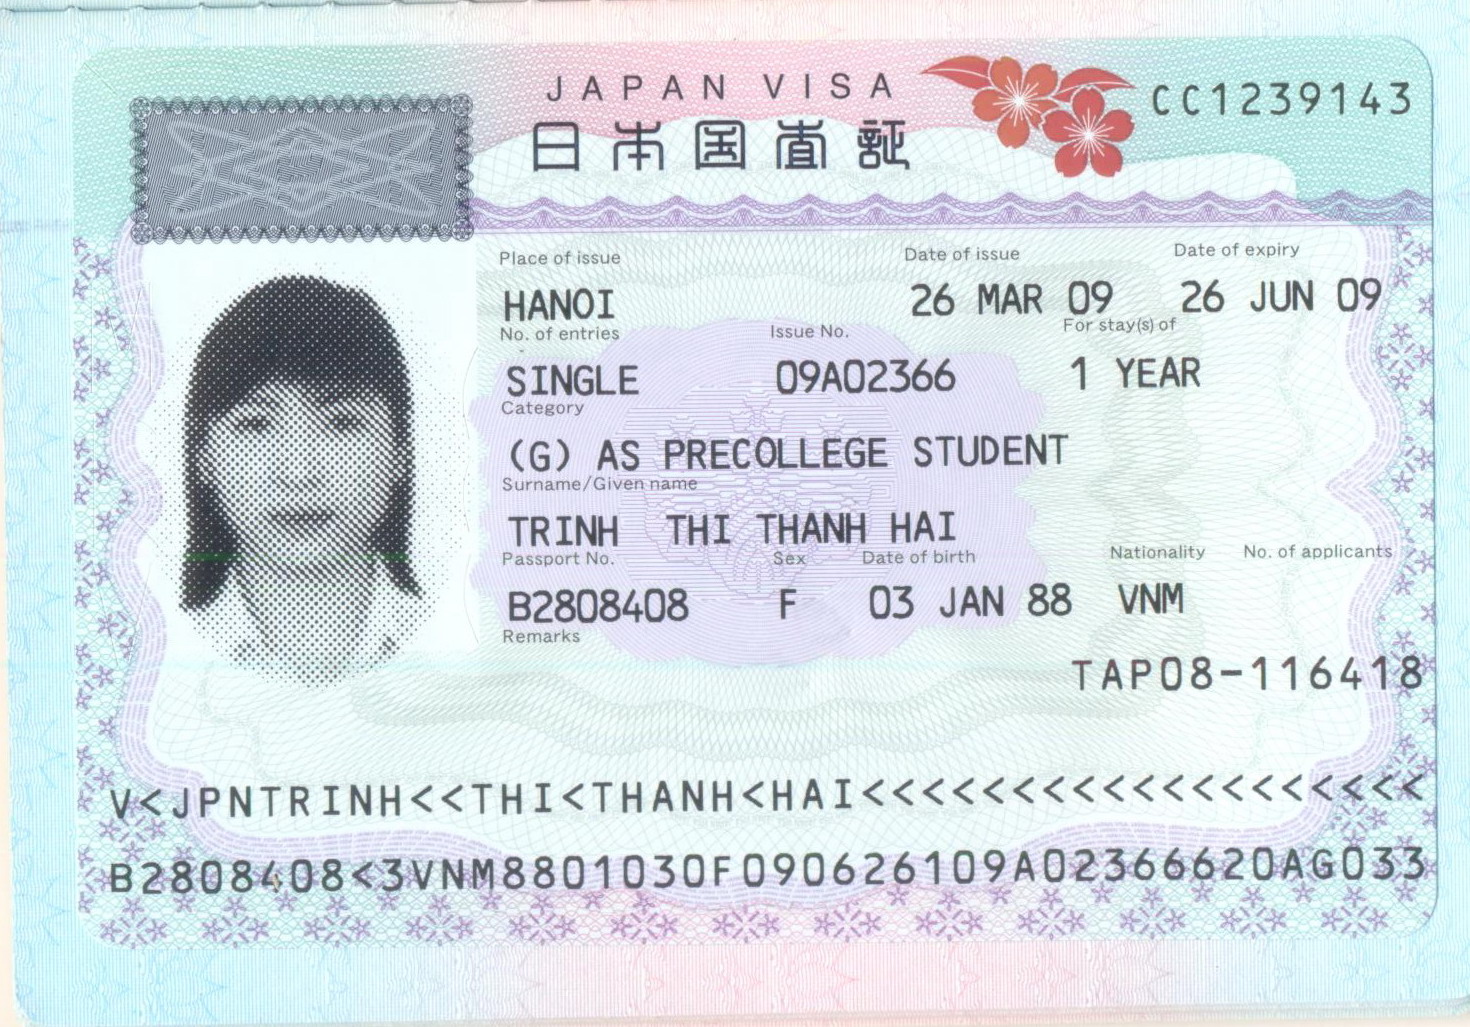 Hướng dẫn chi tiết cách khai form xin visa du học Nhật Bản